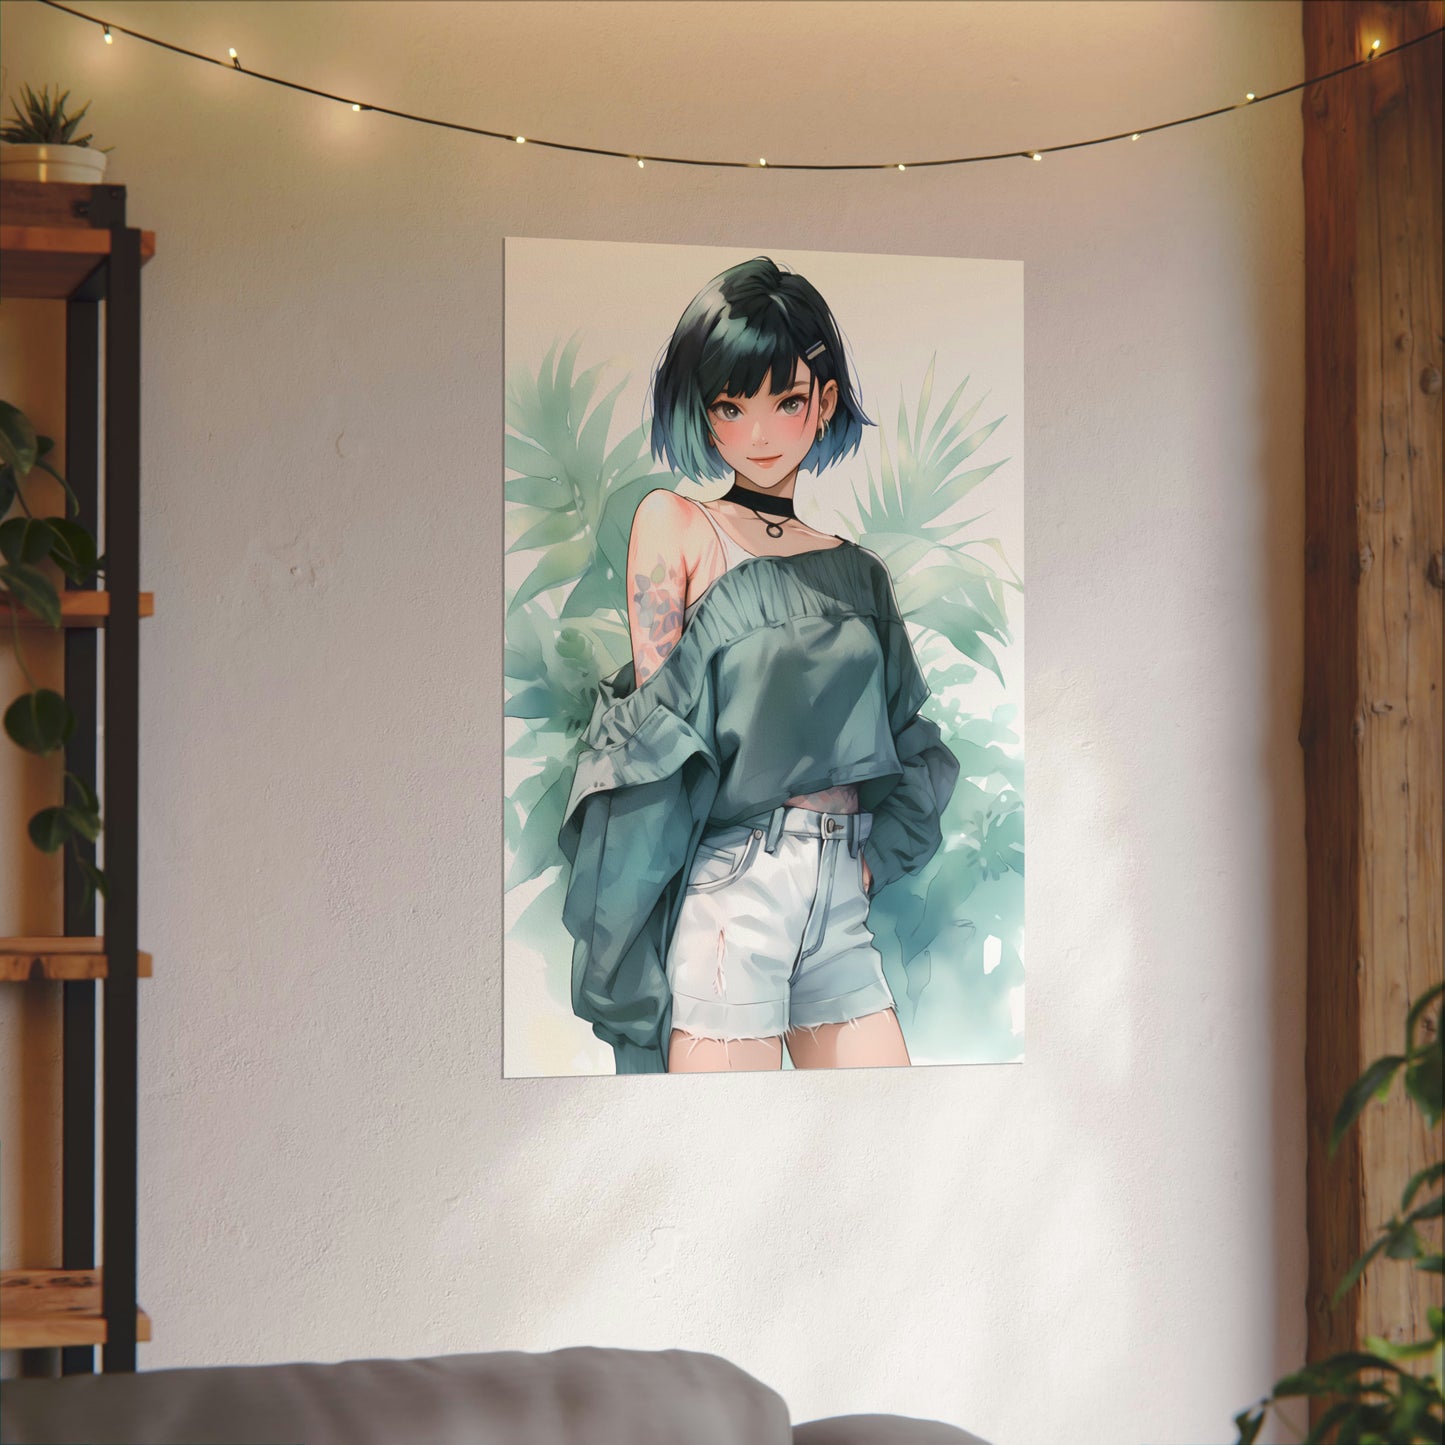 Verdant Escape - Anime Girl Watercolor Poster